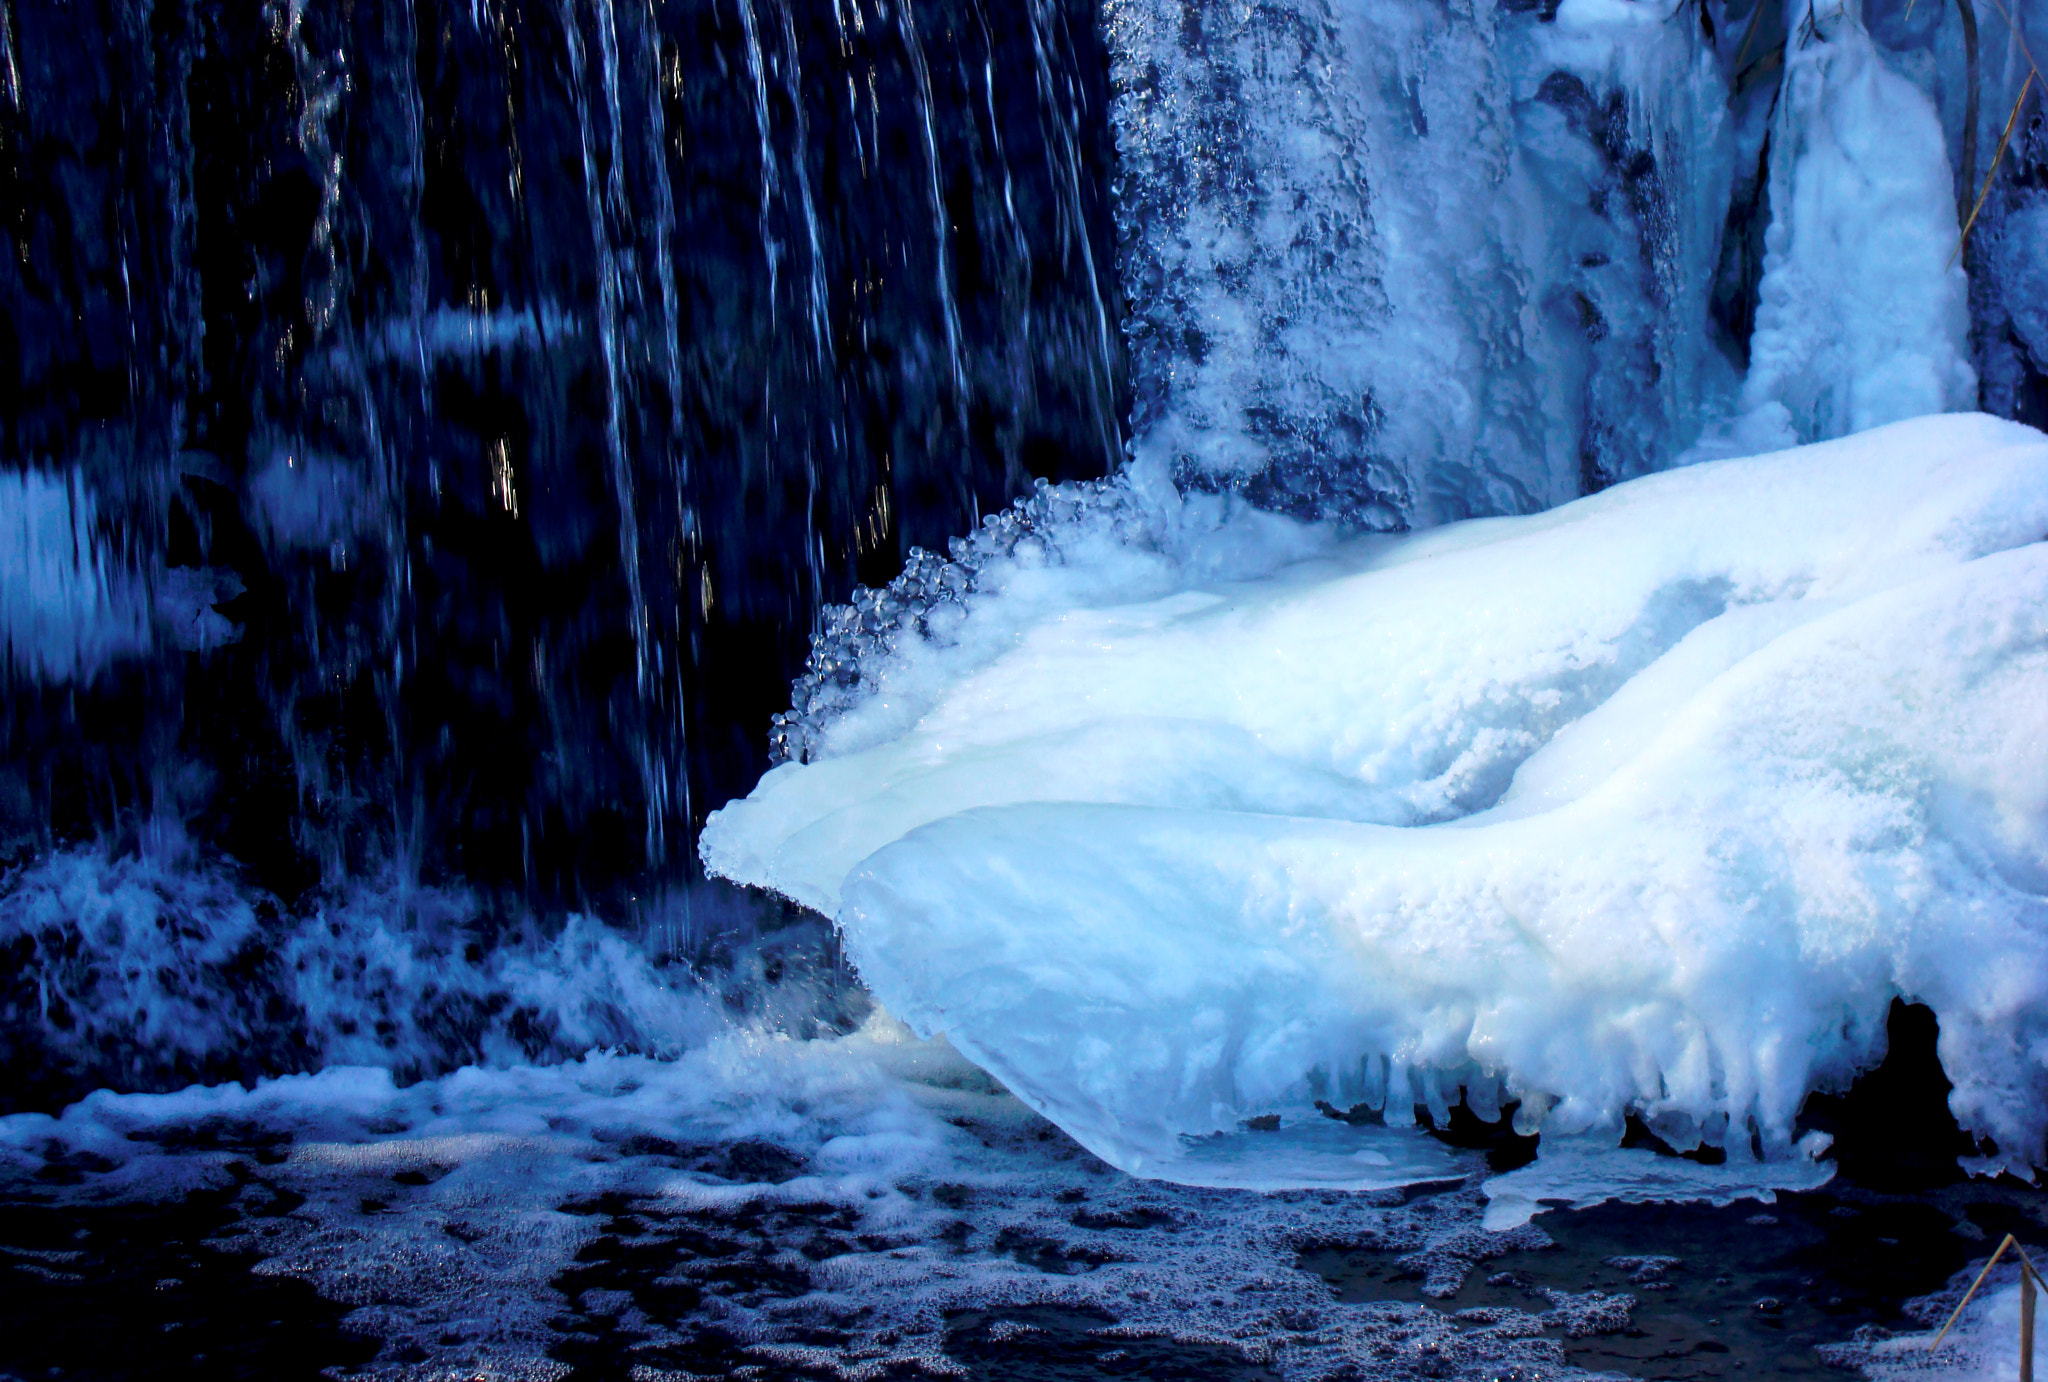 Sony DSC-W200 sample photo. Little frozen waterfall photography